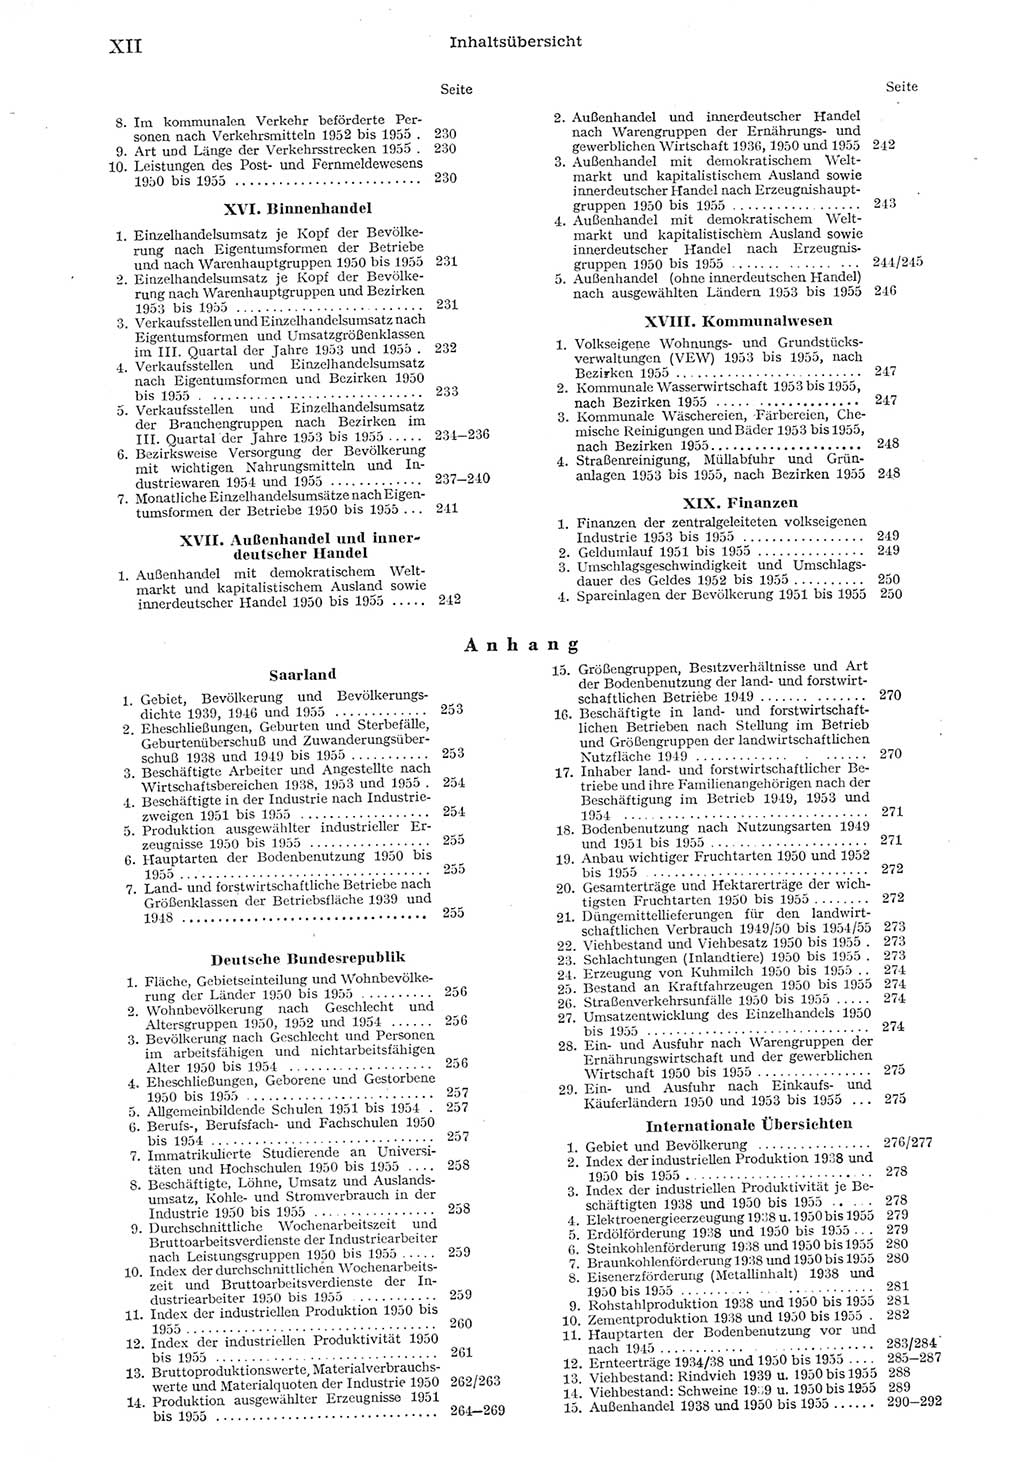 Statistisches Jahrbuch der Deutschen Demokratischen Republik (DDR) 1955, Seite 12 (Stat. Jb. DDR 1955, S. 12)